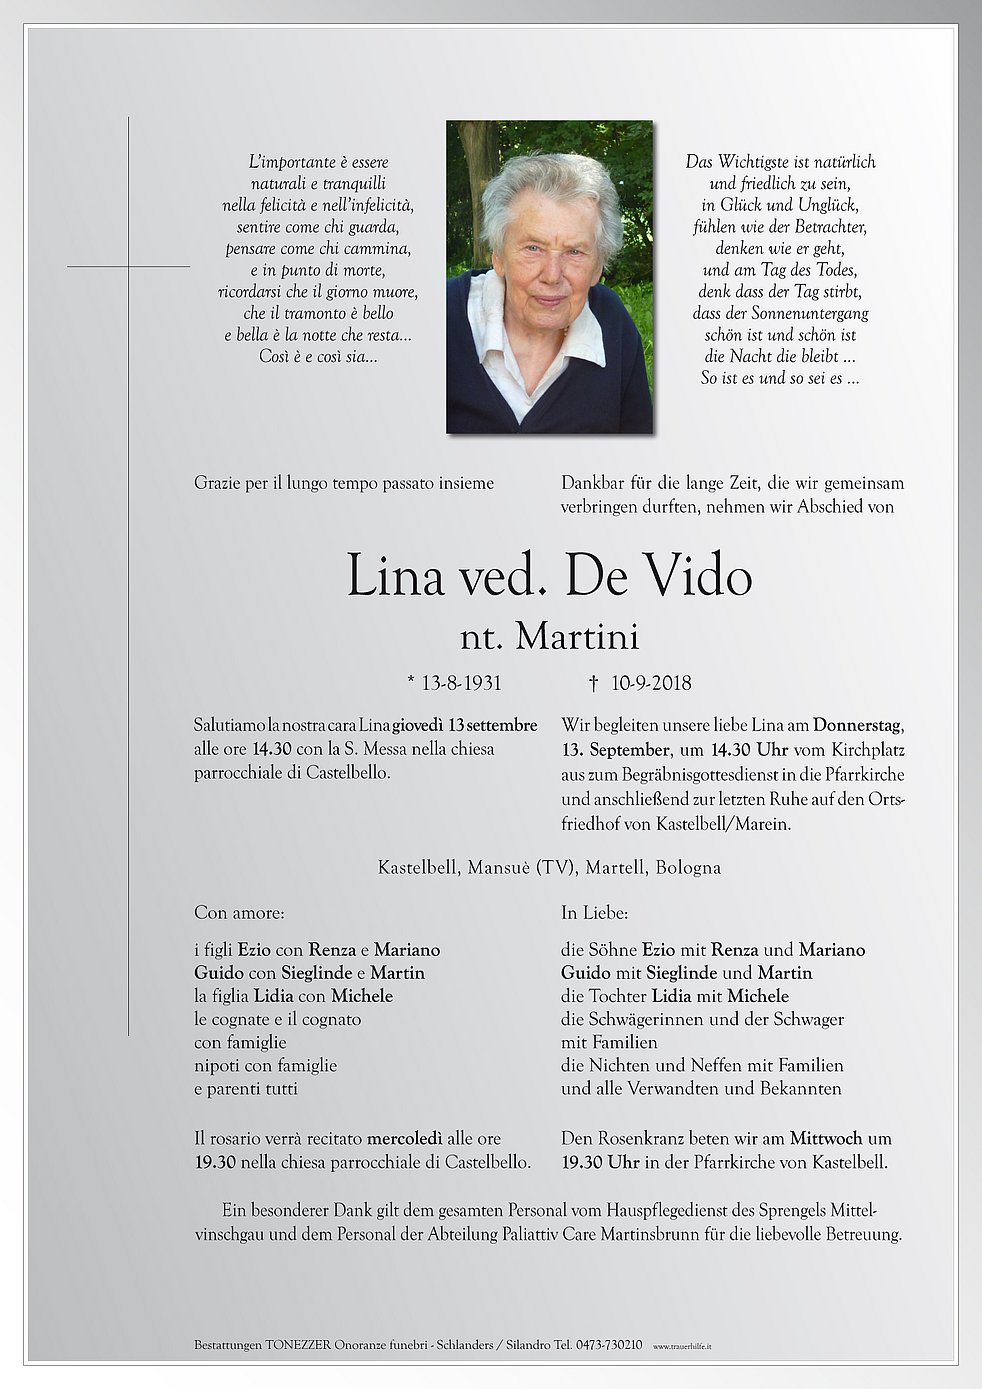 Lina Wwe De Vido Aus Kastelbell Tschars Trauerhilfeit Das Südtiroler Gedenkportal 